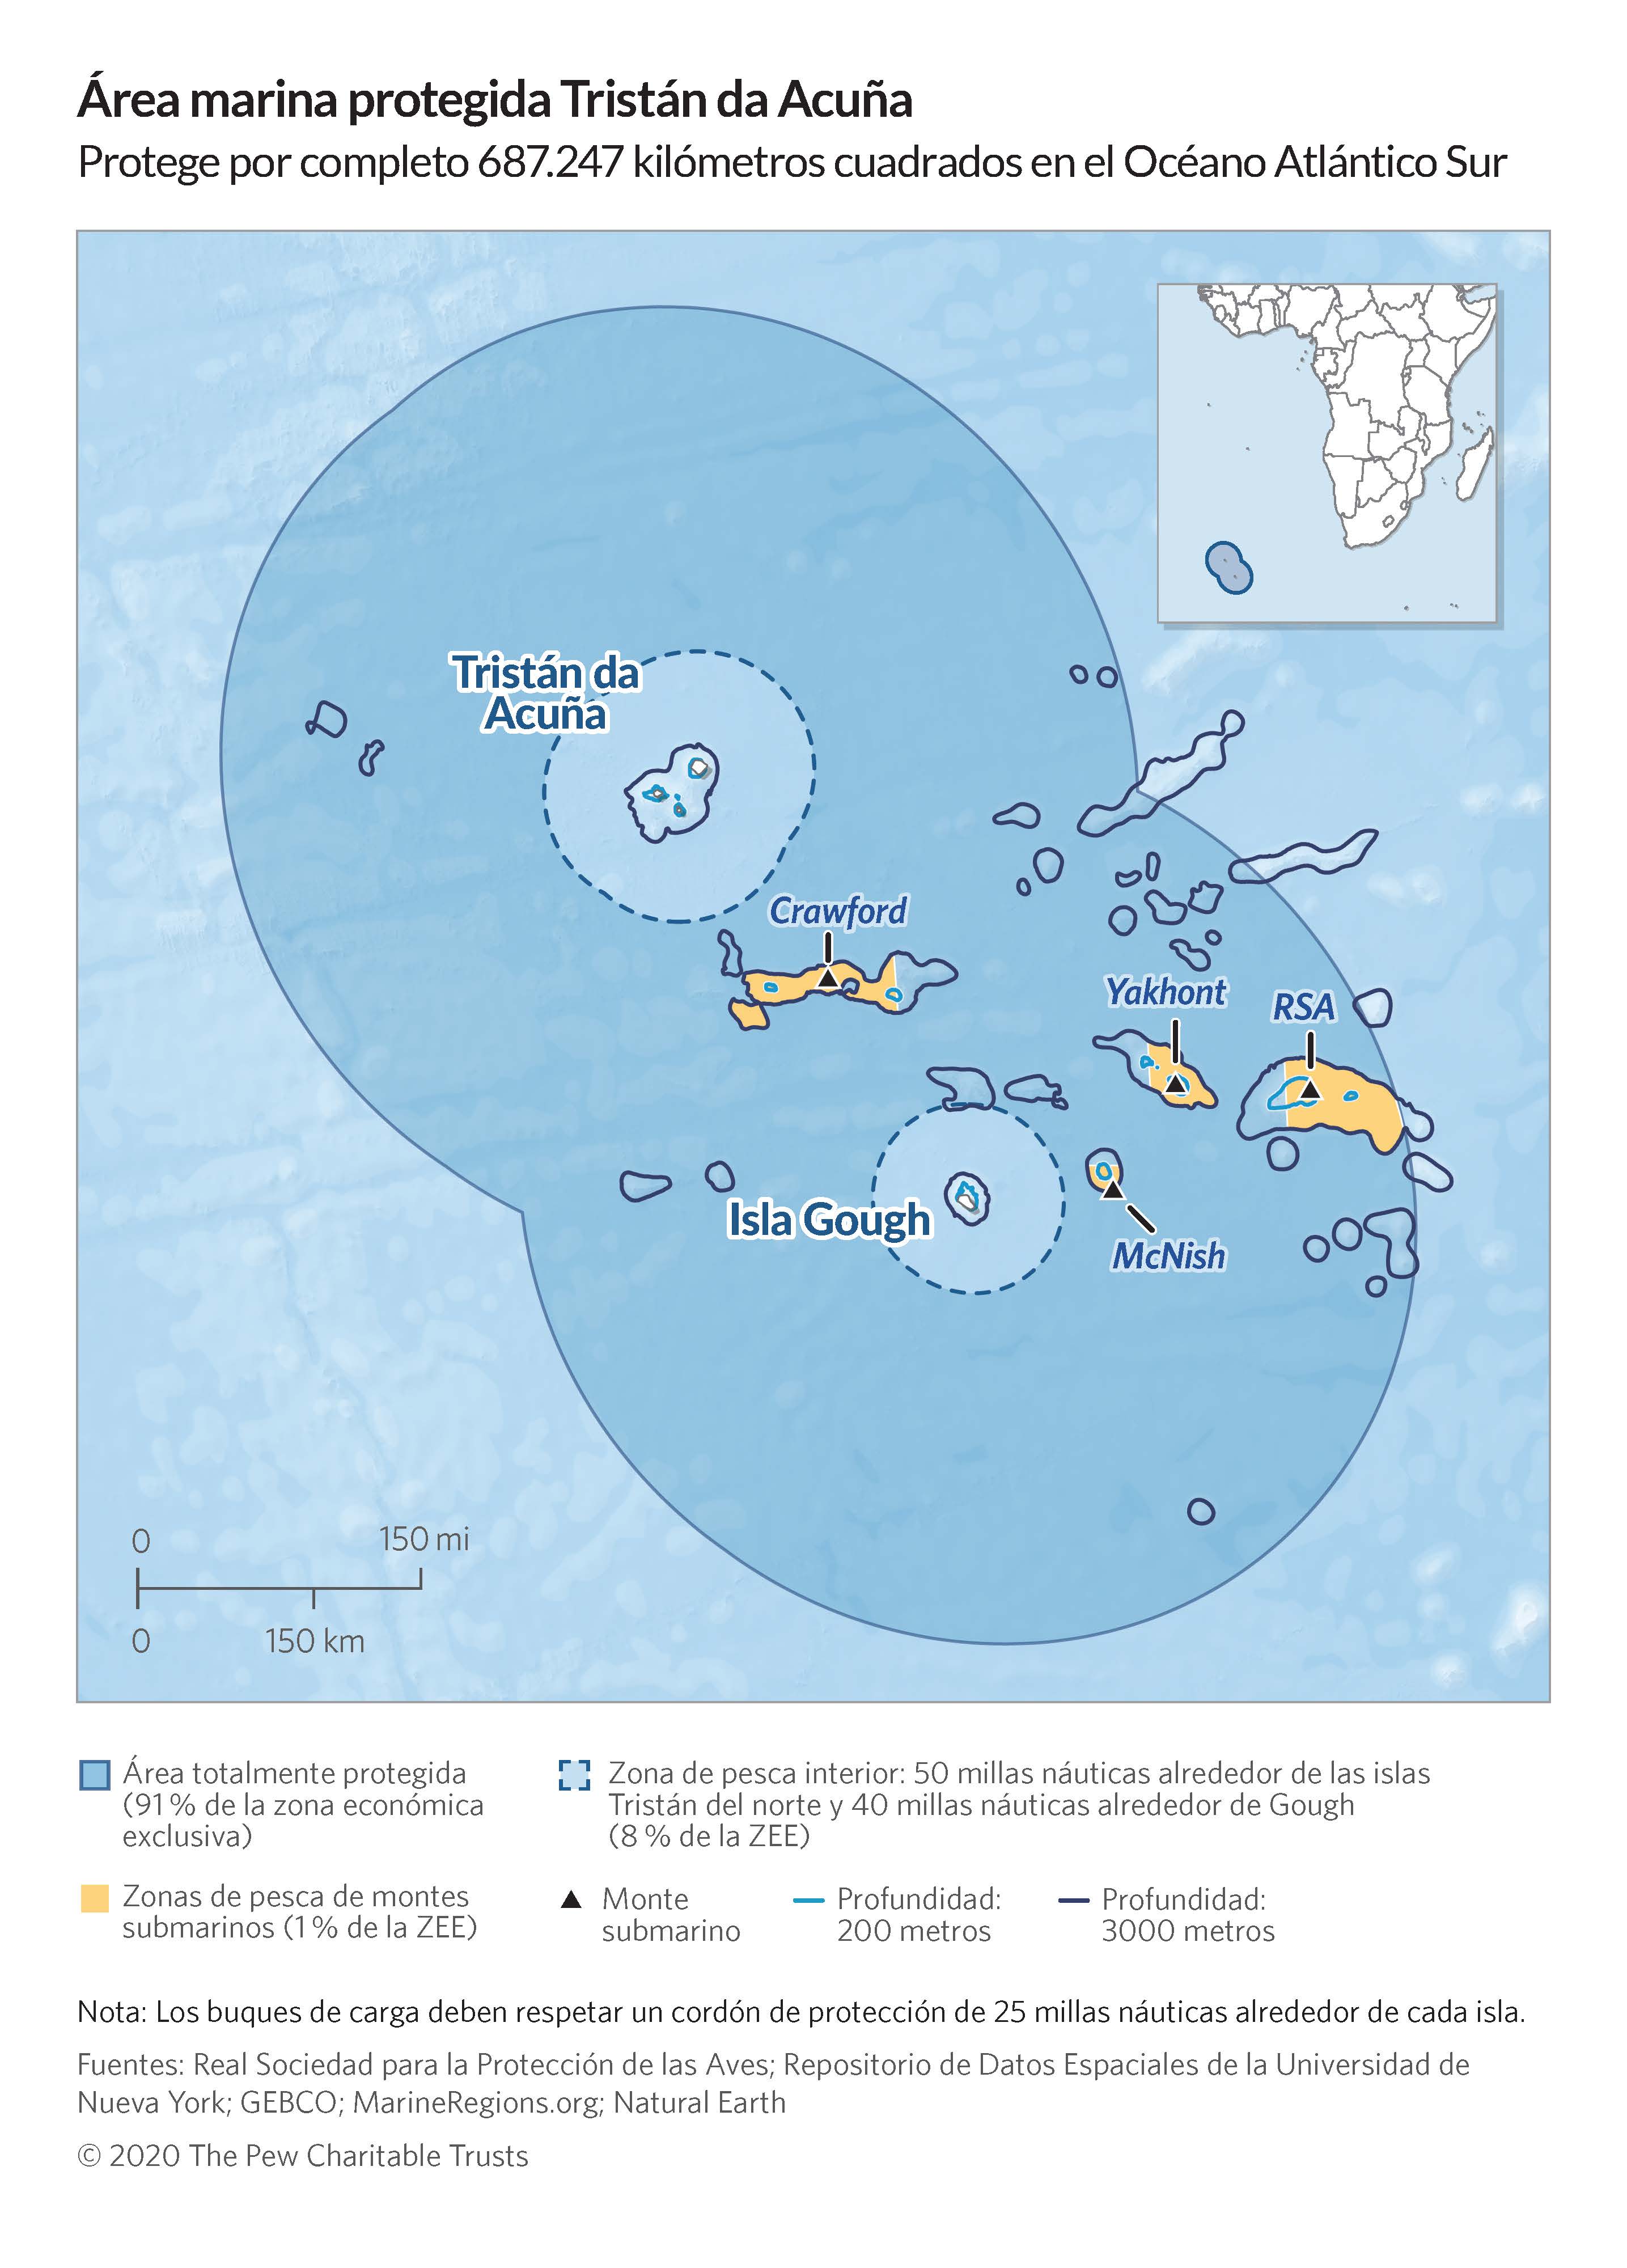 Mapa explicativo de las diferentes zonas y usos dentro del Área Marina Protegida de Tristan da Cunha / Imagen y traducción: The Pew Charitable Trusts